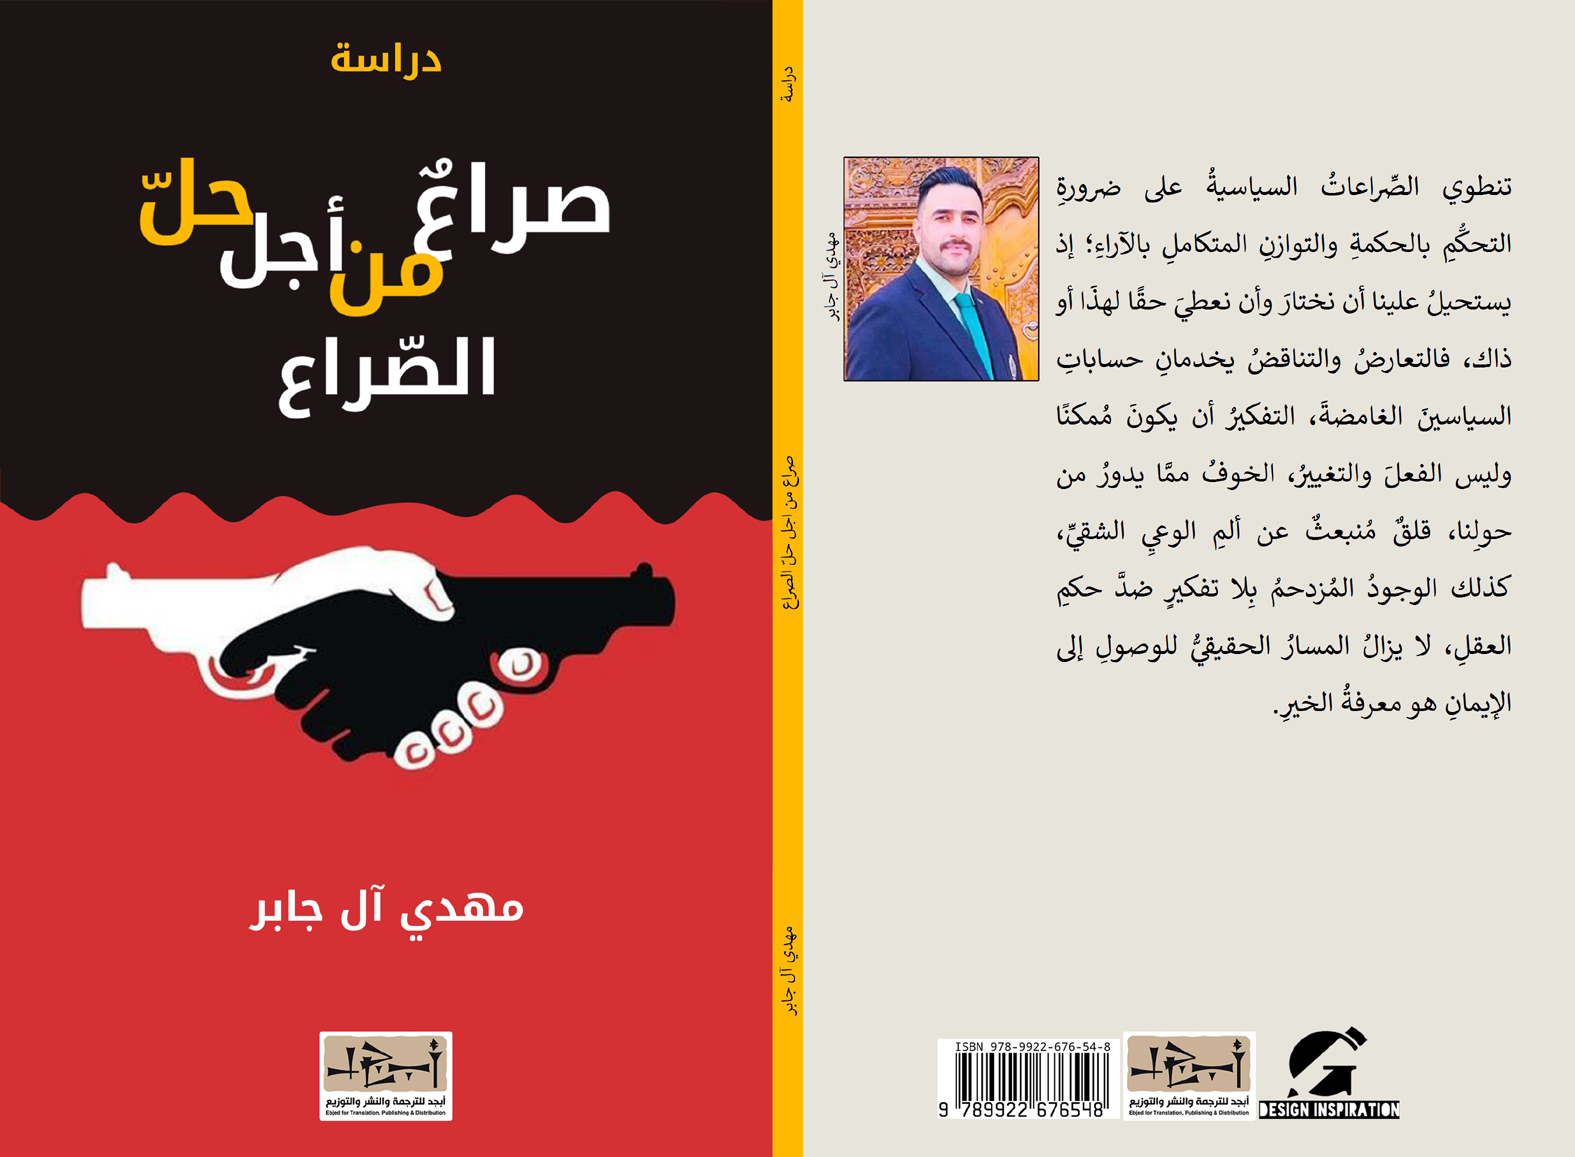 اسم الكتاب: صراع من اجل حل الصراع تأليف: مهدي آل جابر 